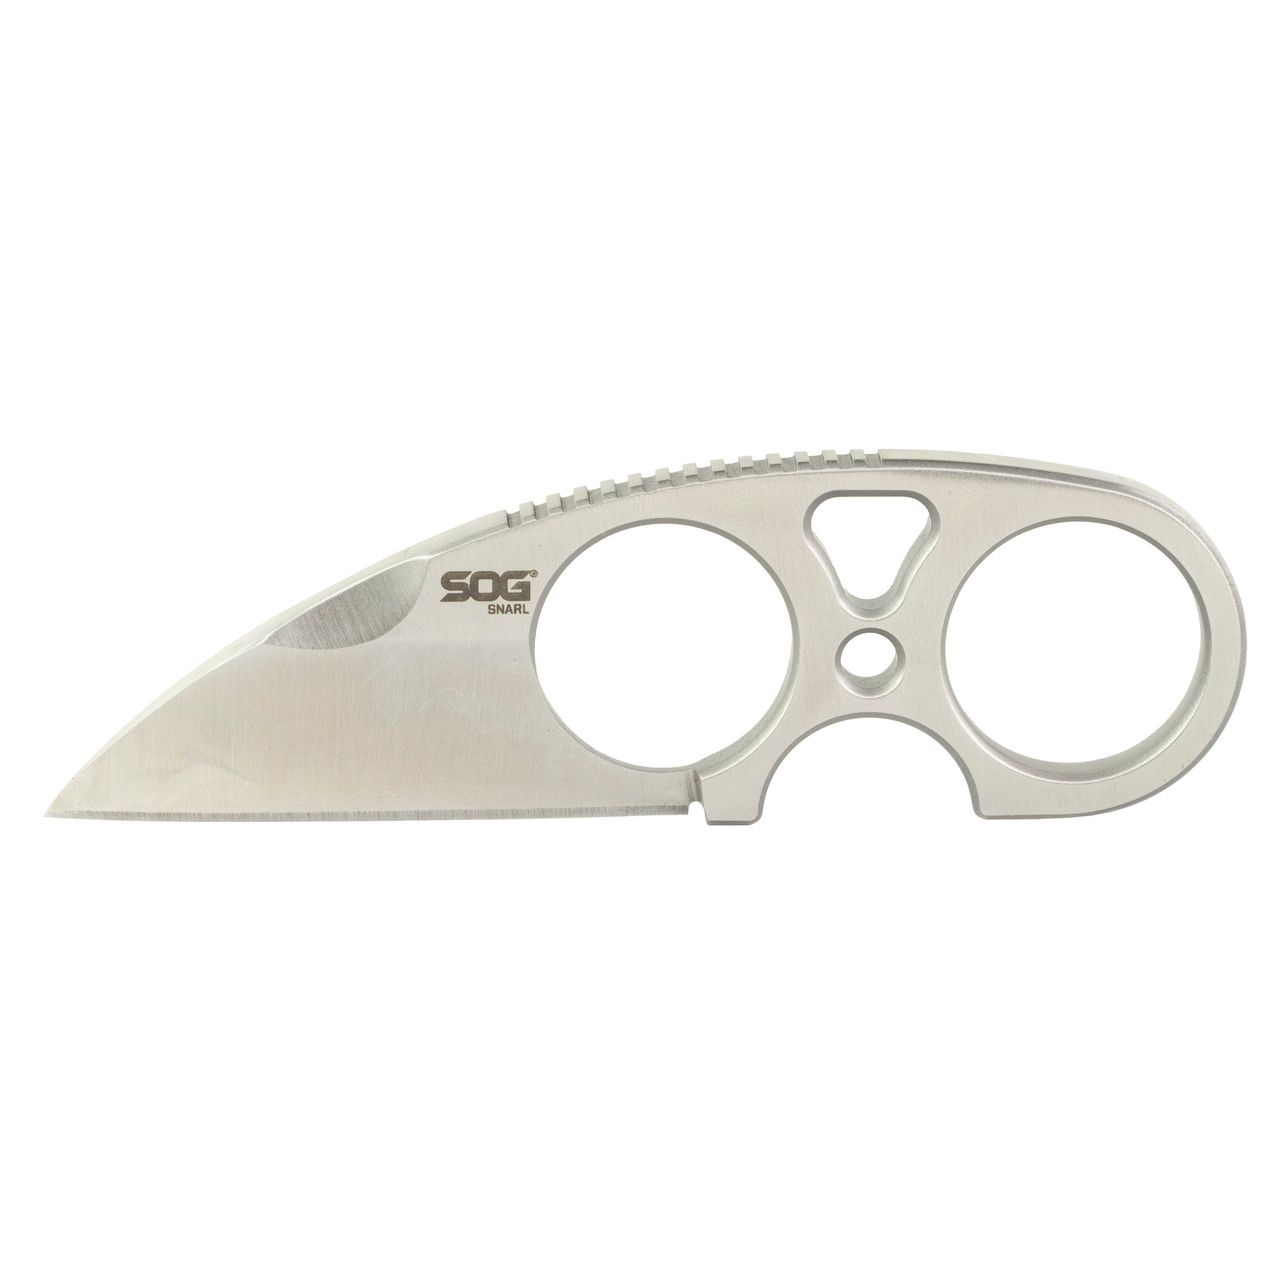 SOG Knives & Tools SOG-JB01K-CP Snarl Silver 2.3